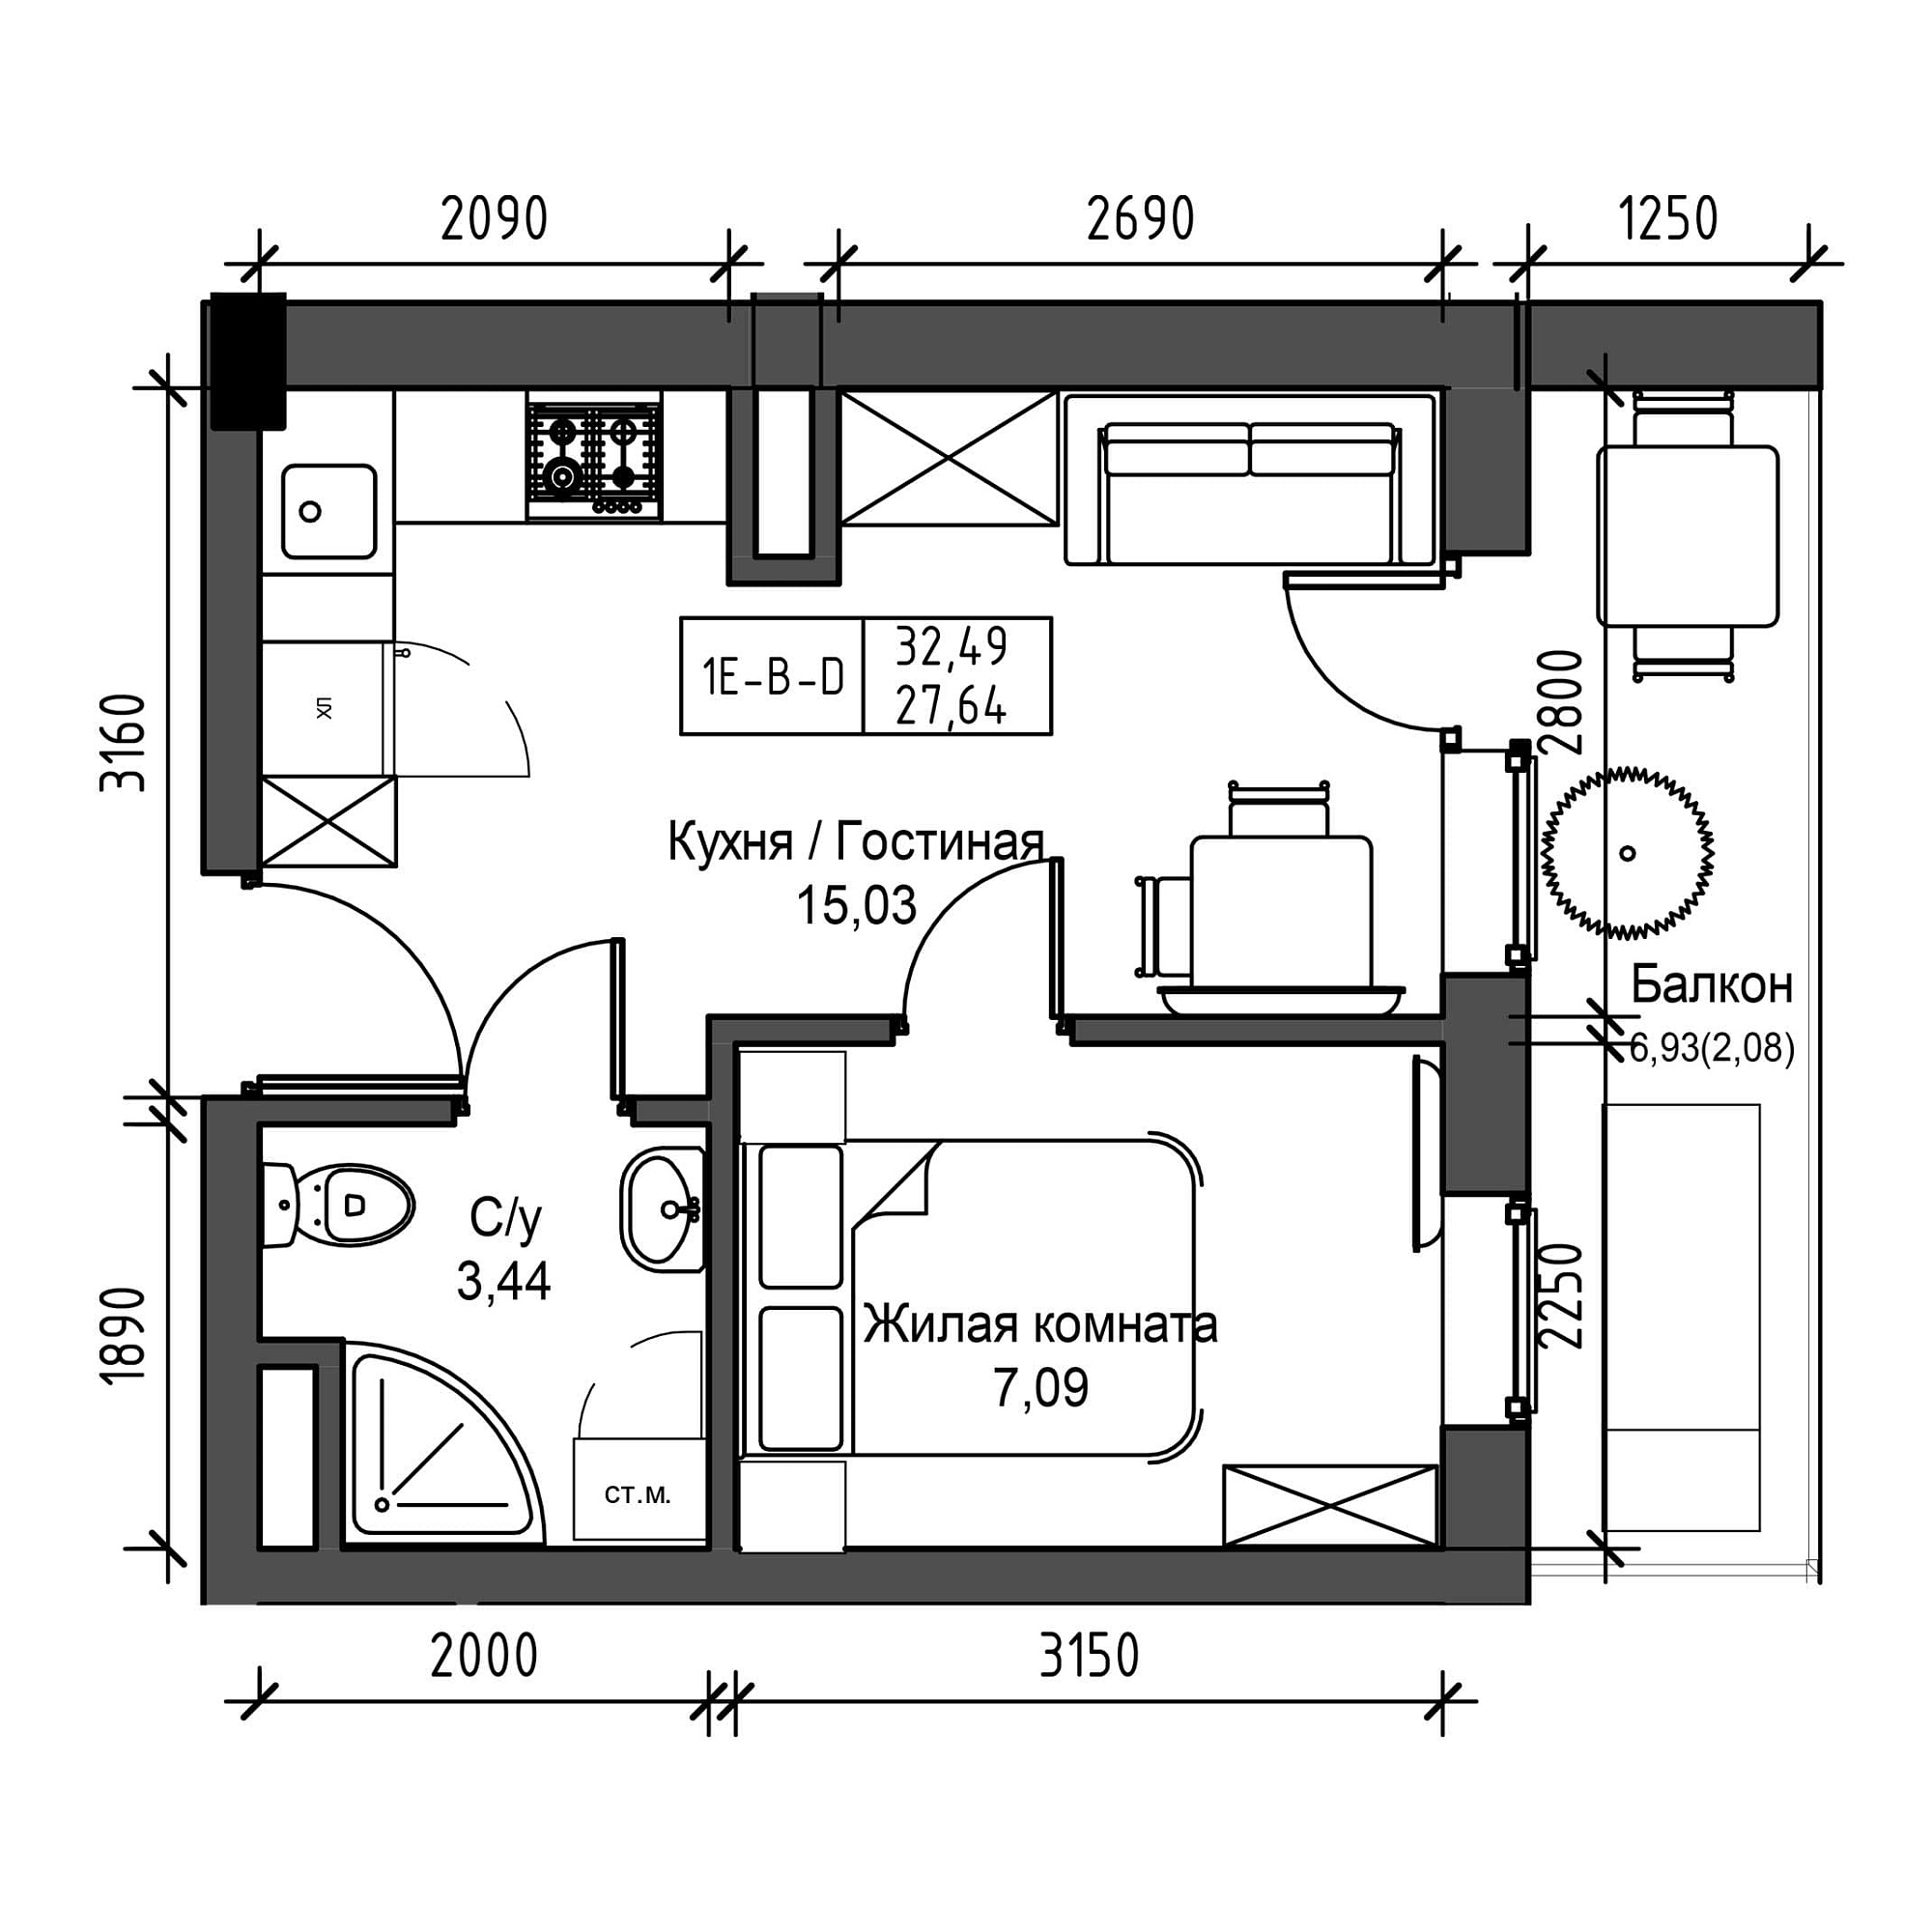 Планировка 1-к квартира площей 27.64м2, UM-001-07/0001.